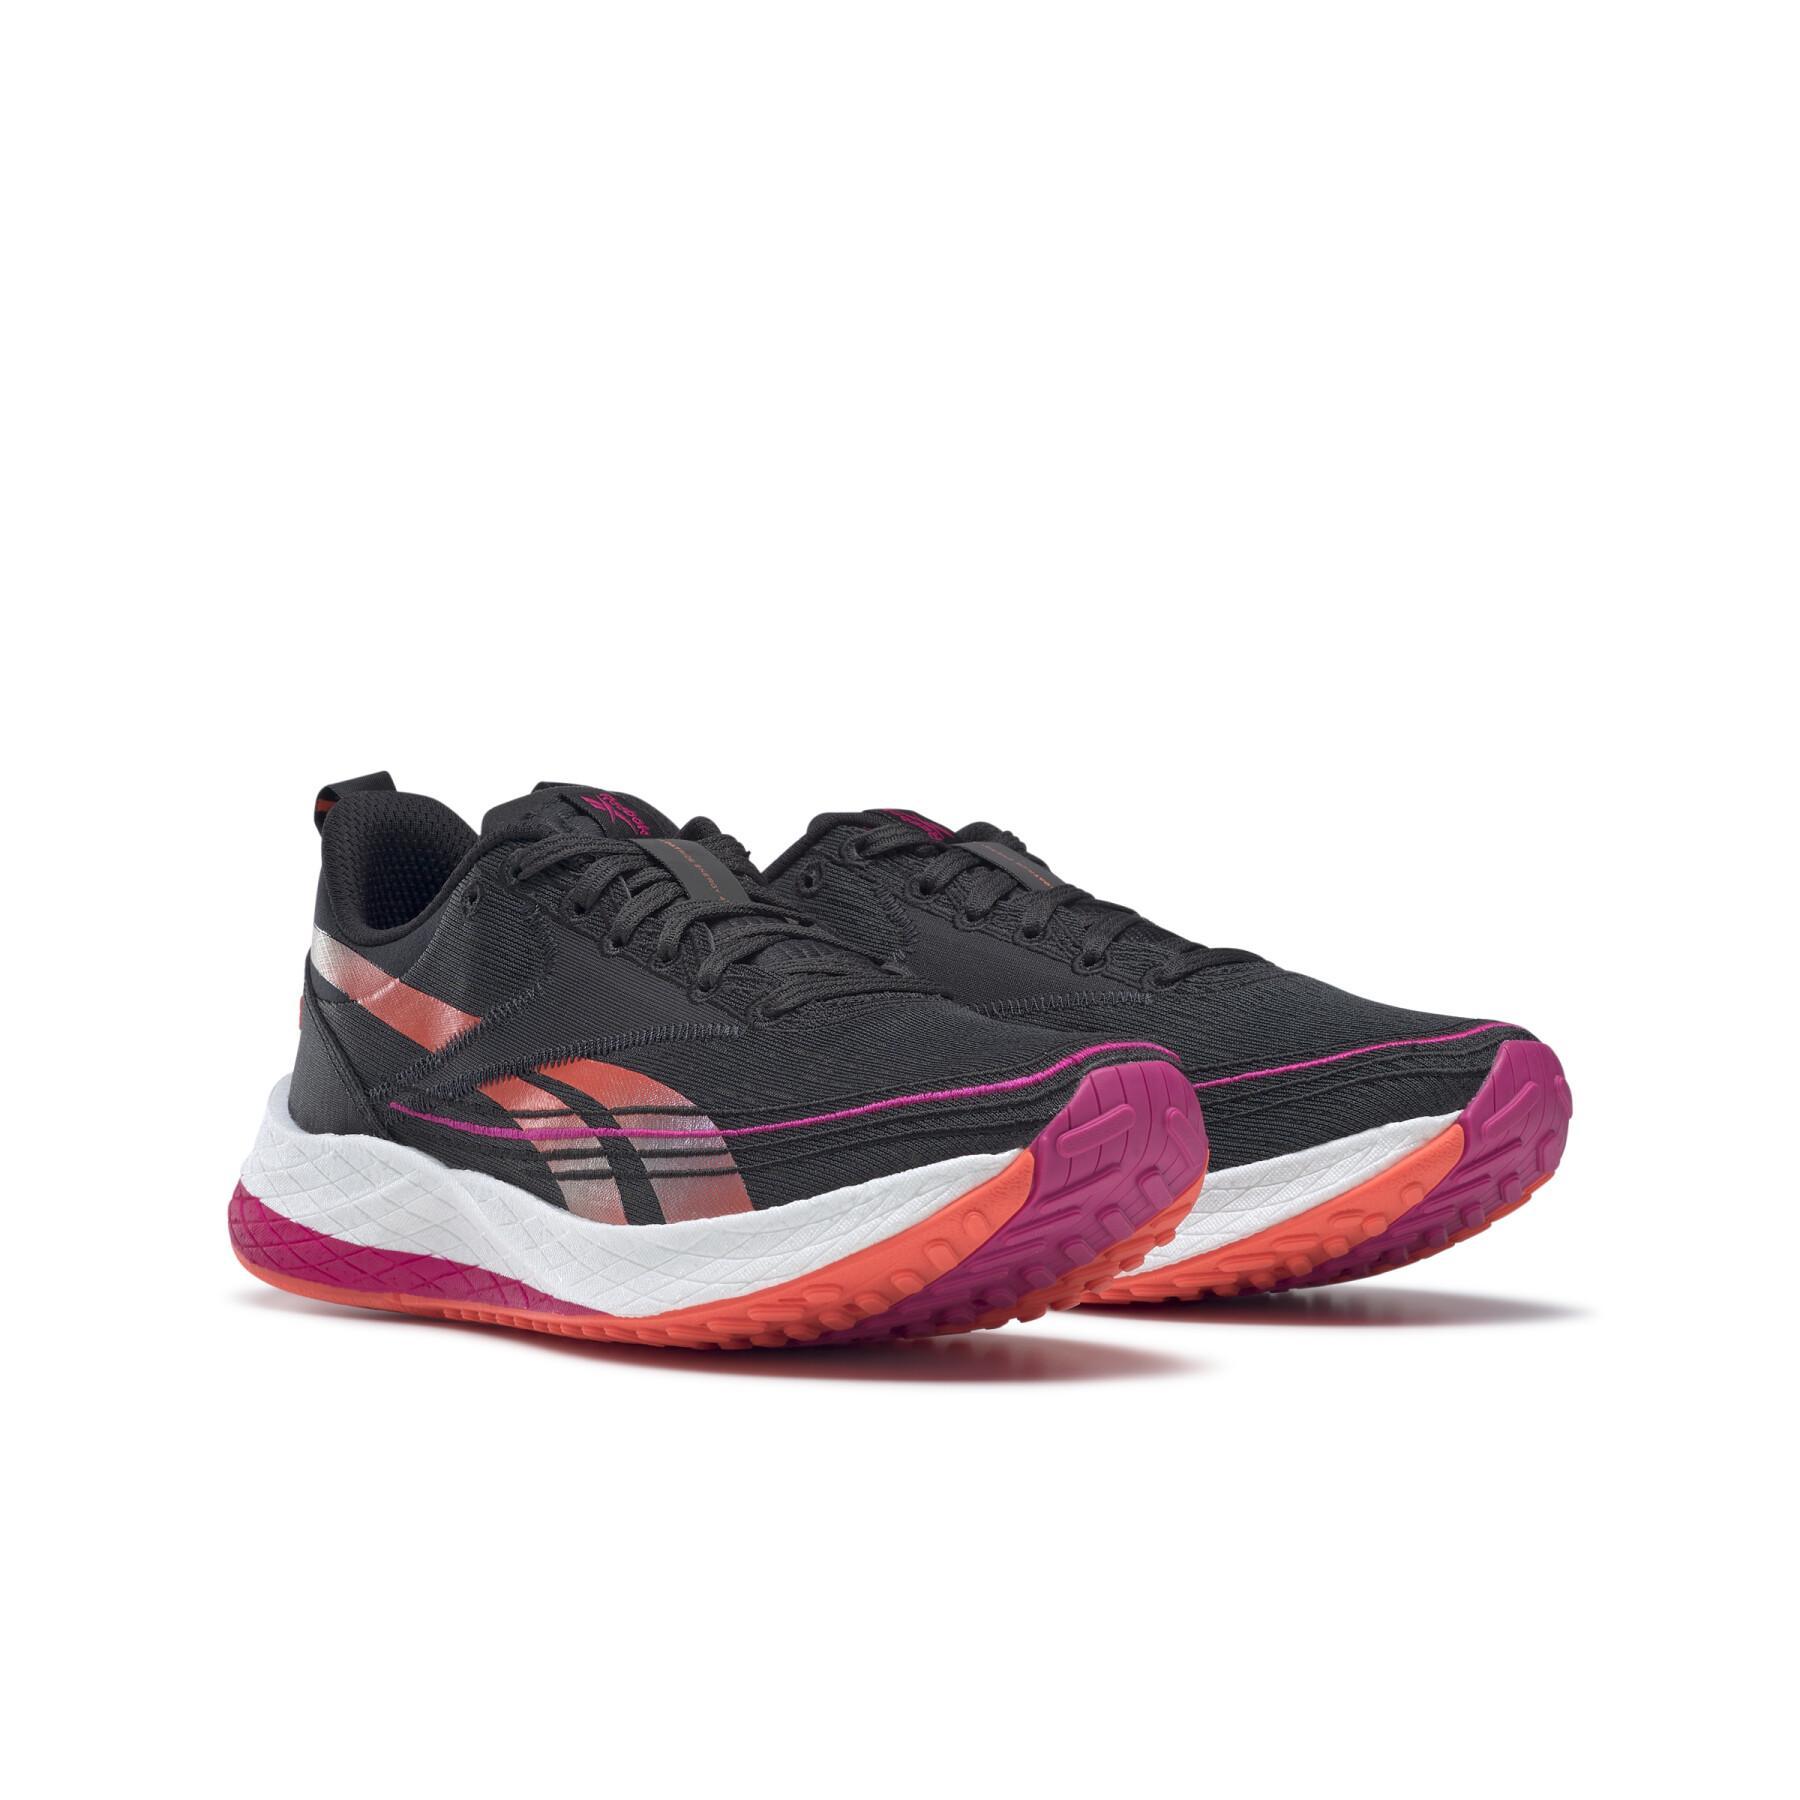 Chaussures de running femme Reebok Floatride Energy 4